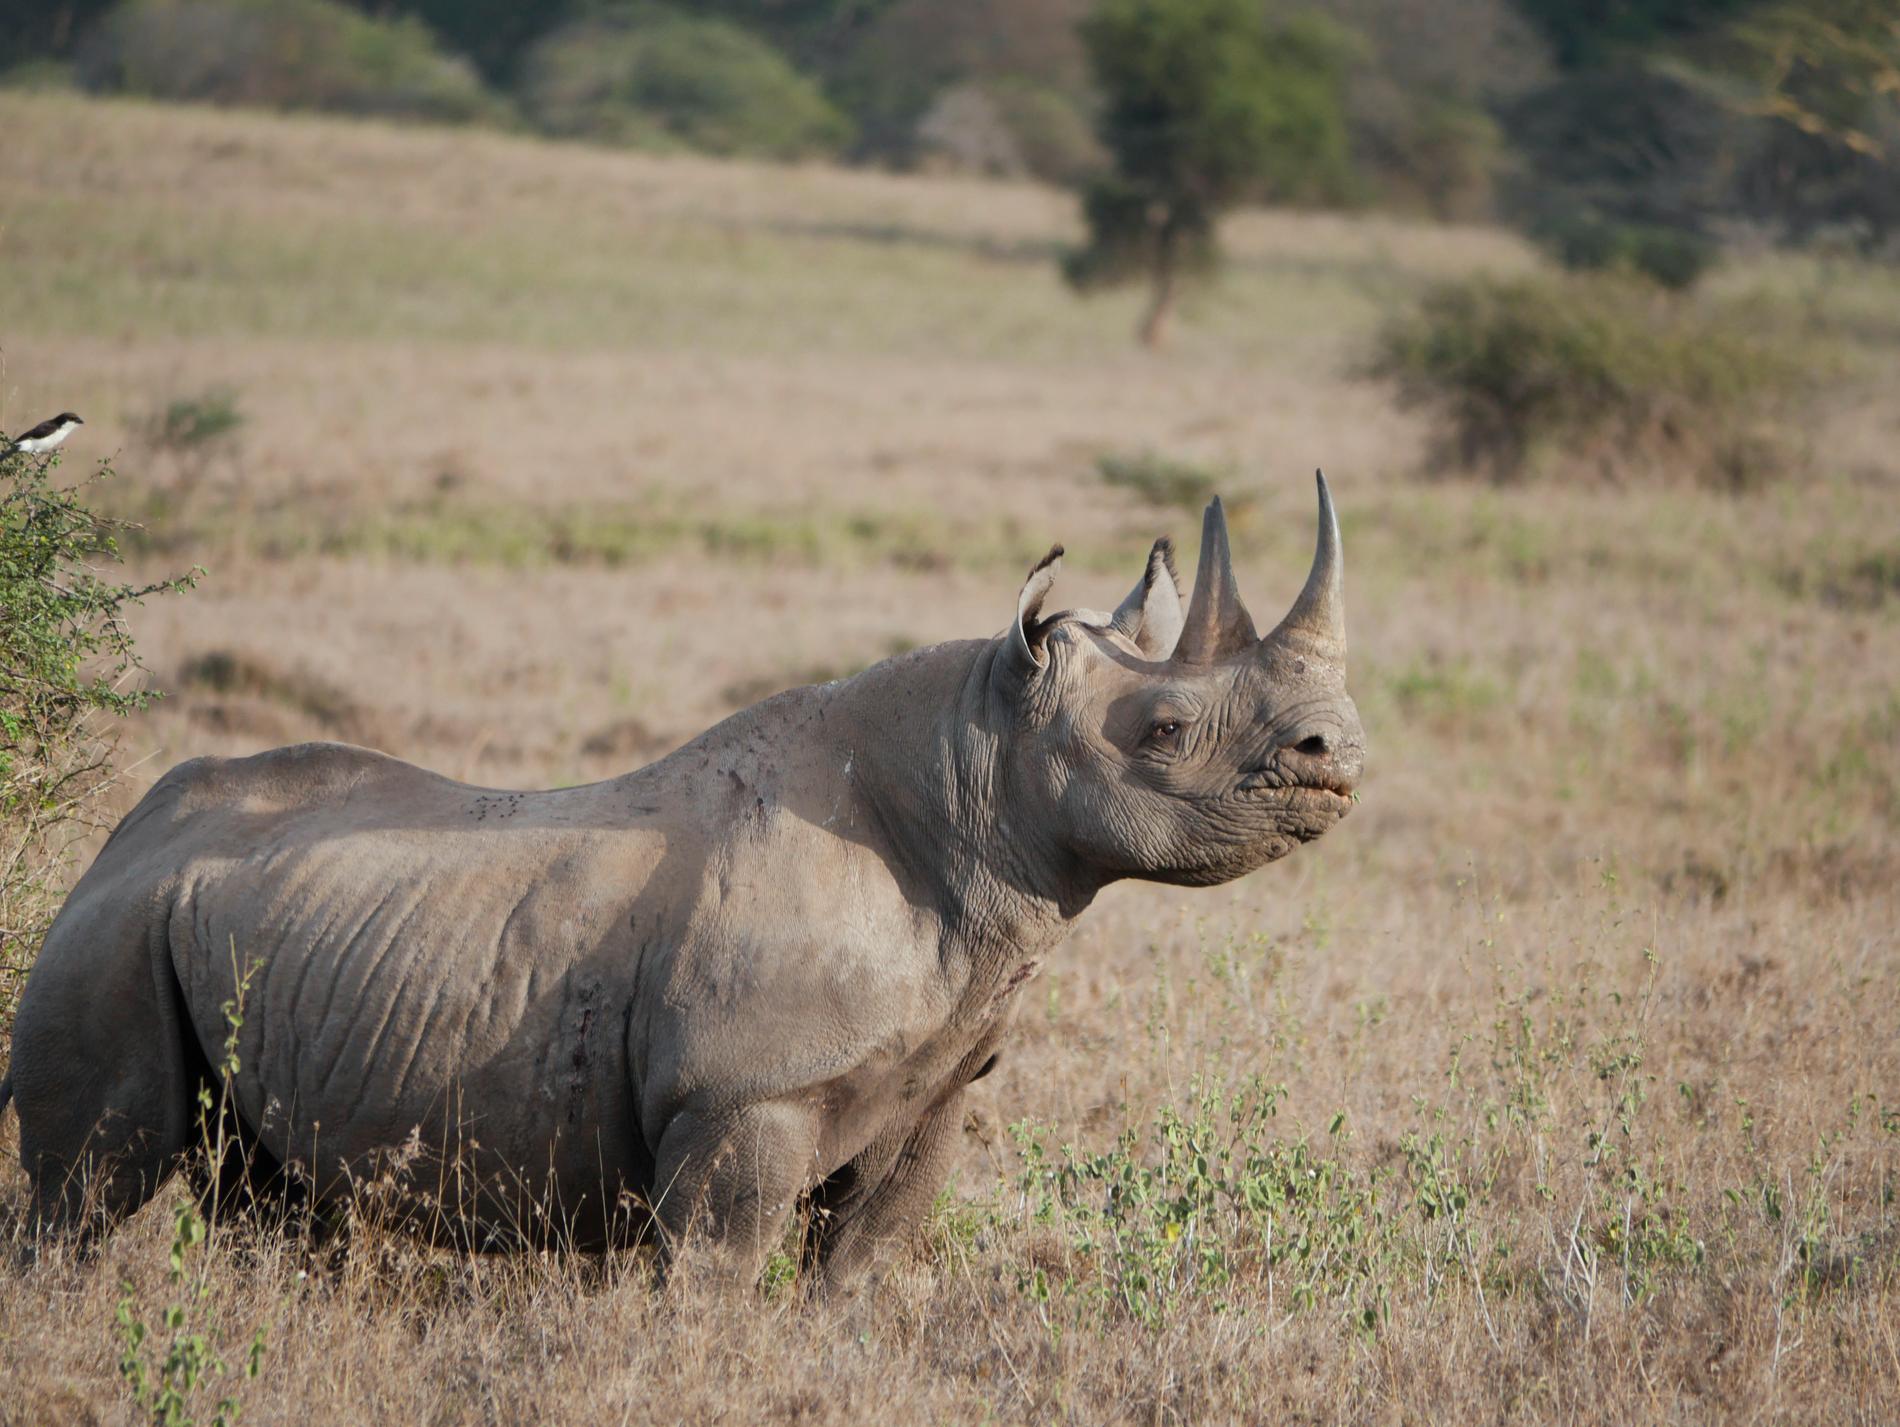 Spetsnoshörning i Nairobi nationalpark, Kenya. De två hornen är värda hundratusentals kronor på den svarta marknaden.